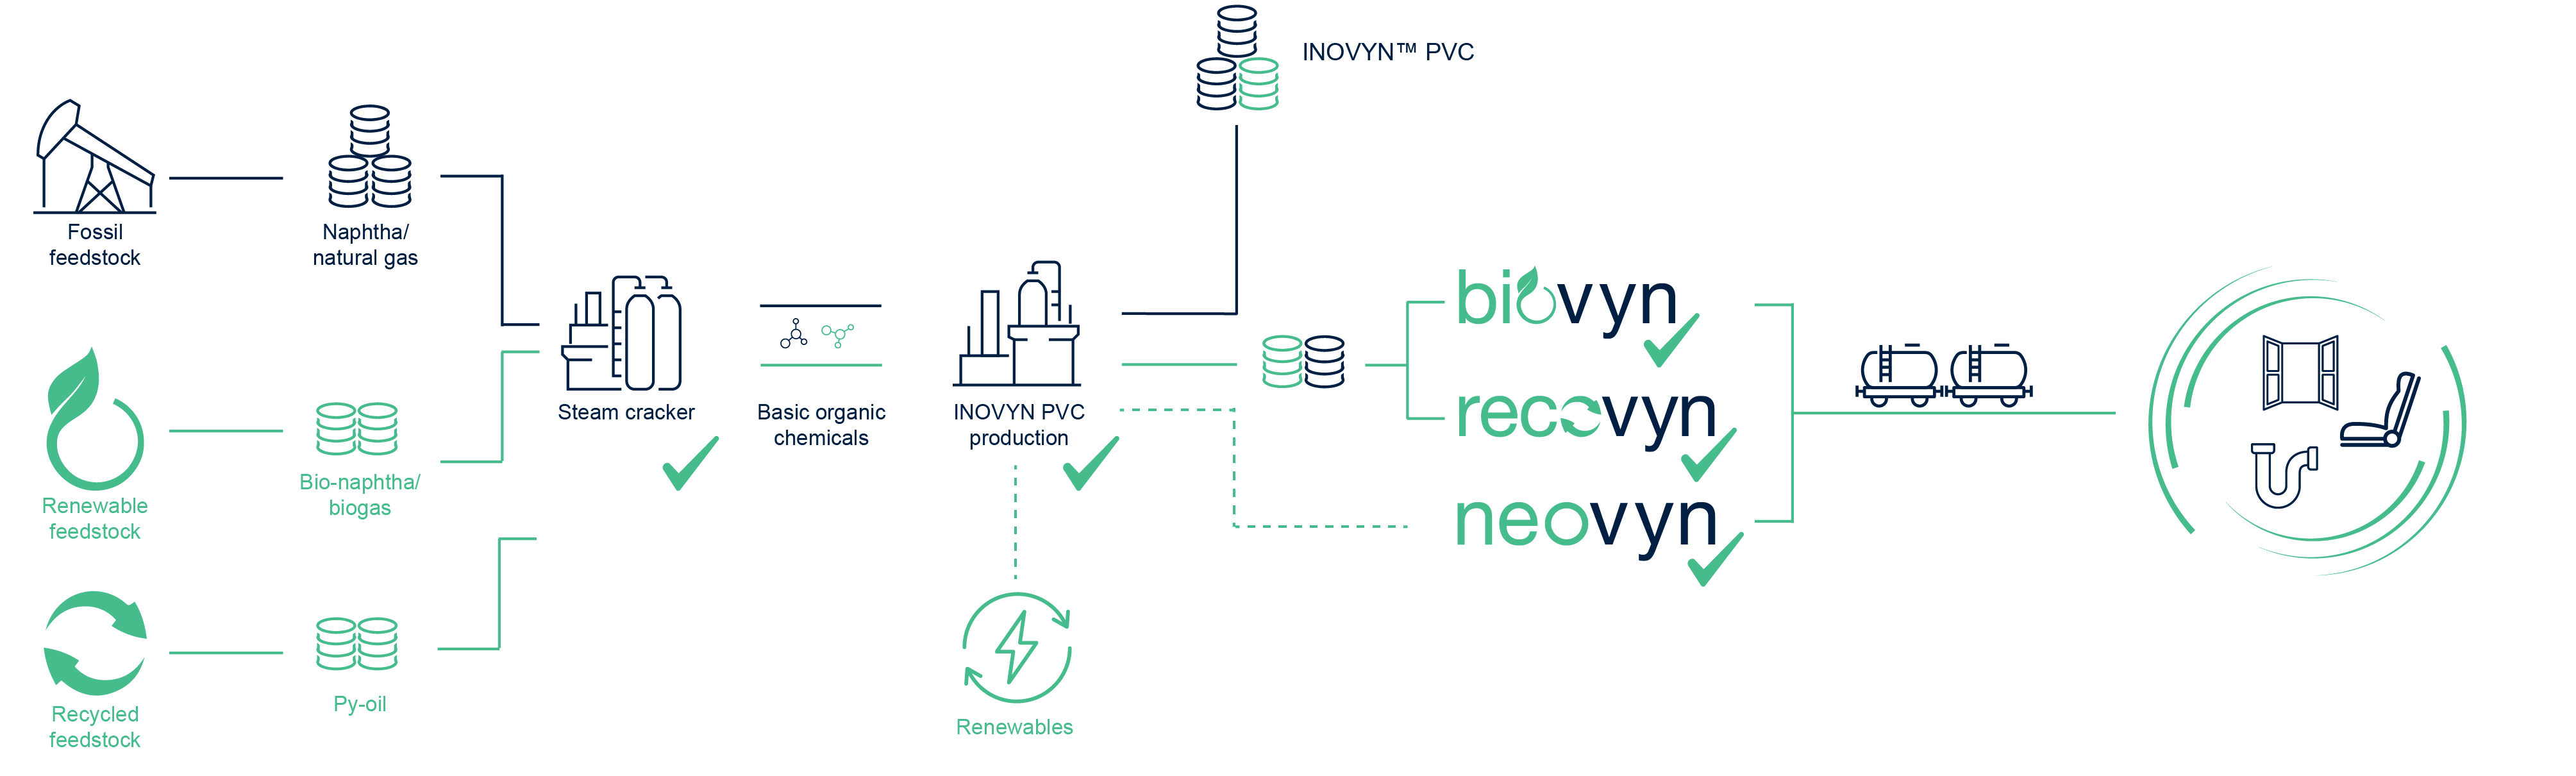 How bioattribution works_BIOVYN-RECOVYN-NEOVYN.png